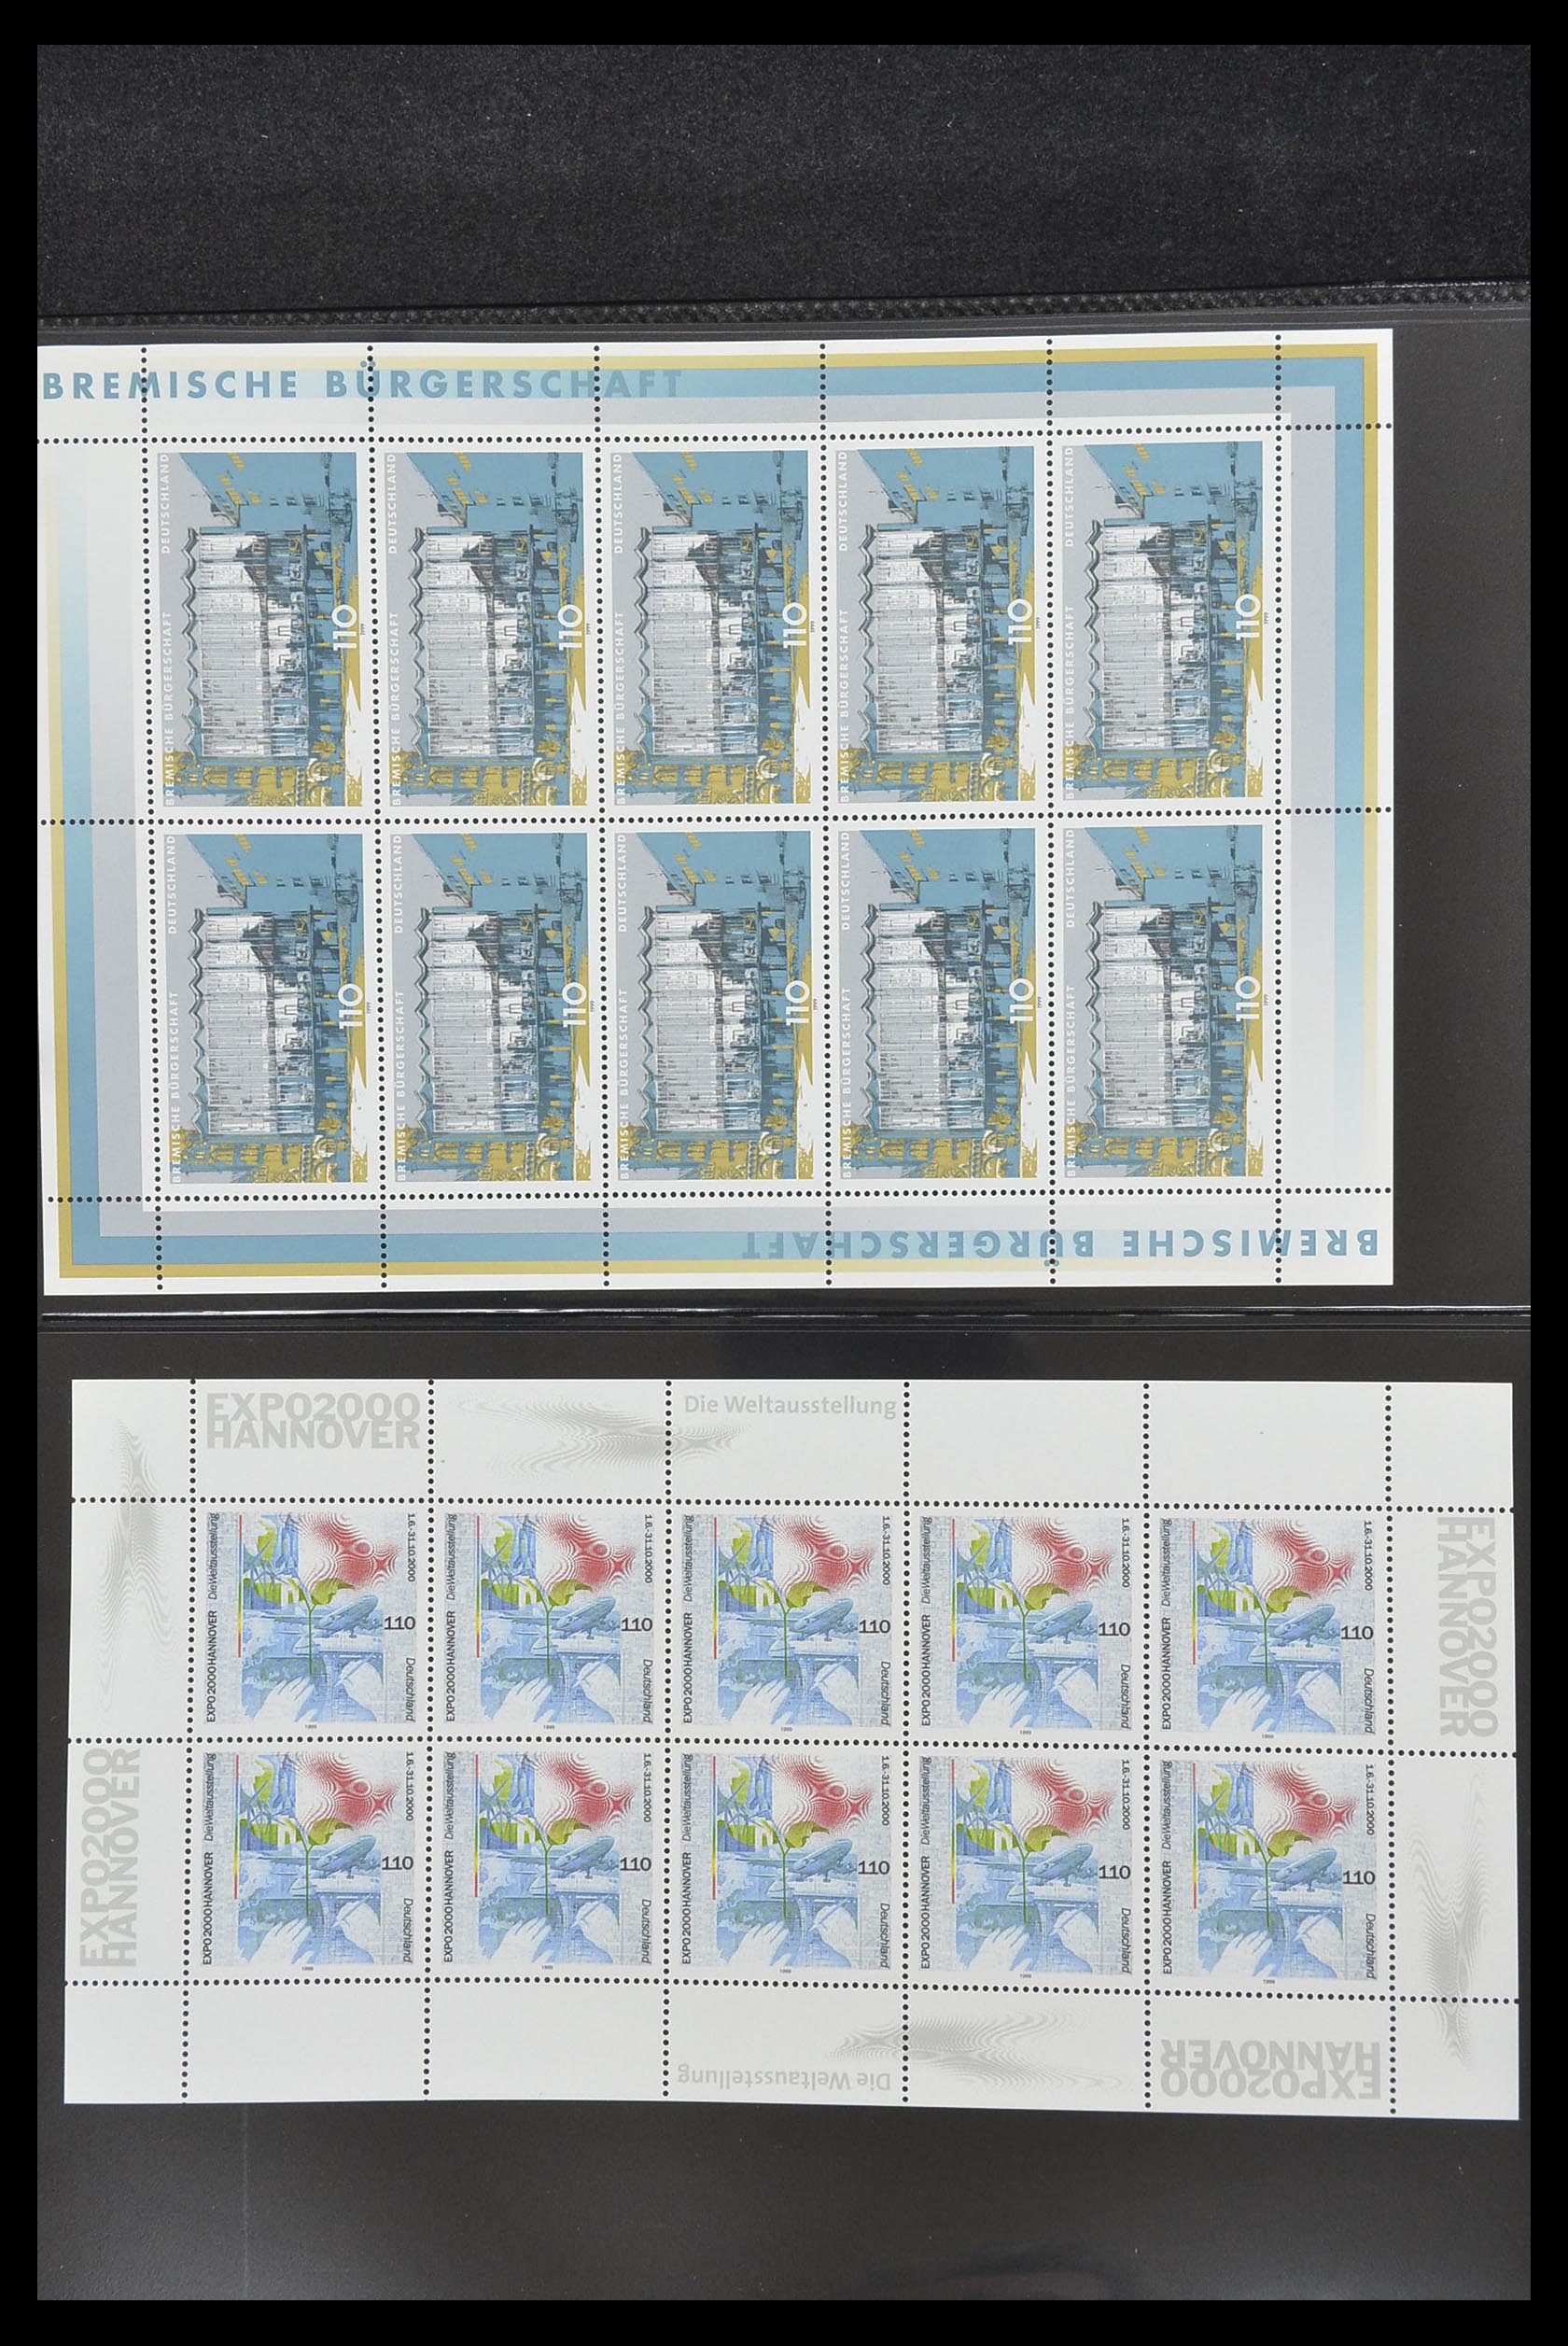 33936 128 - Stamp collection 33936 Bundespost kleinbogen 1994-2000.